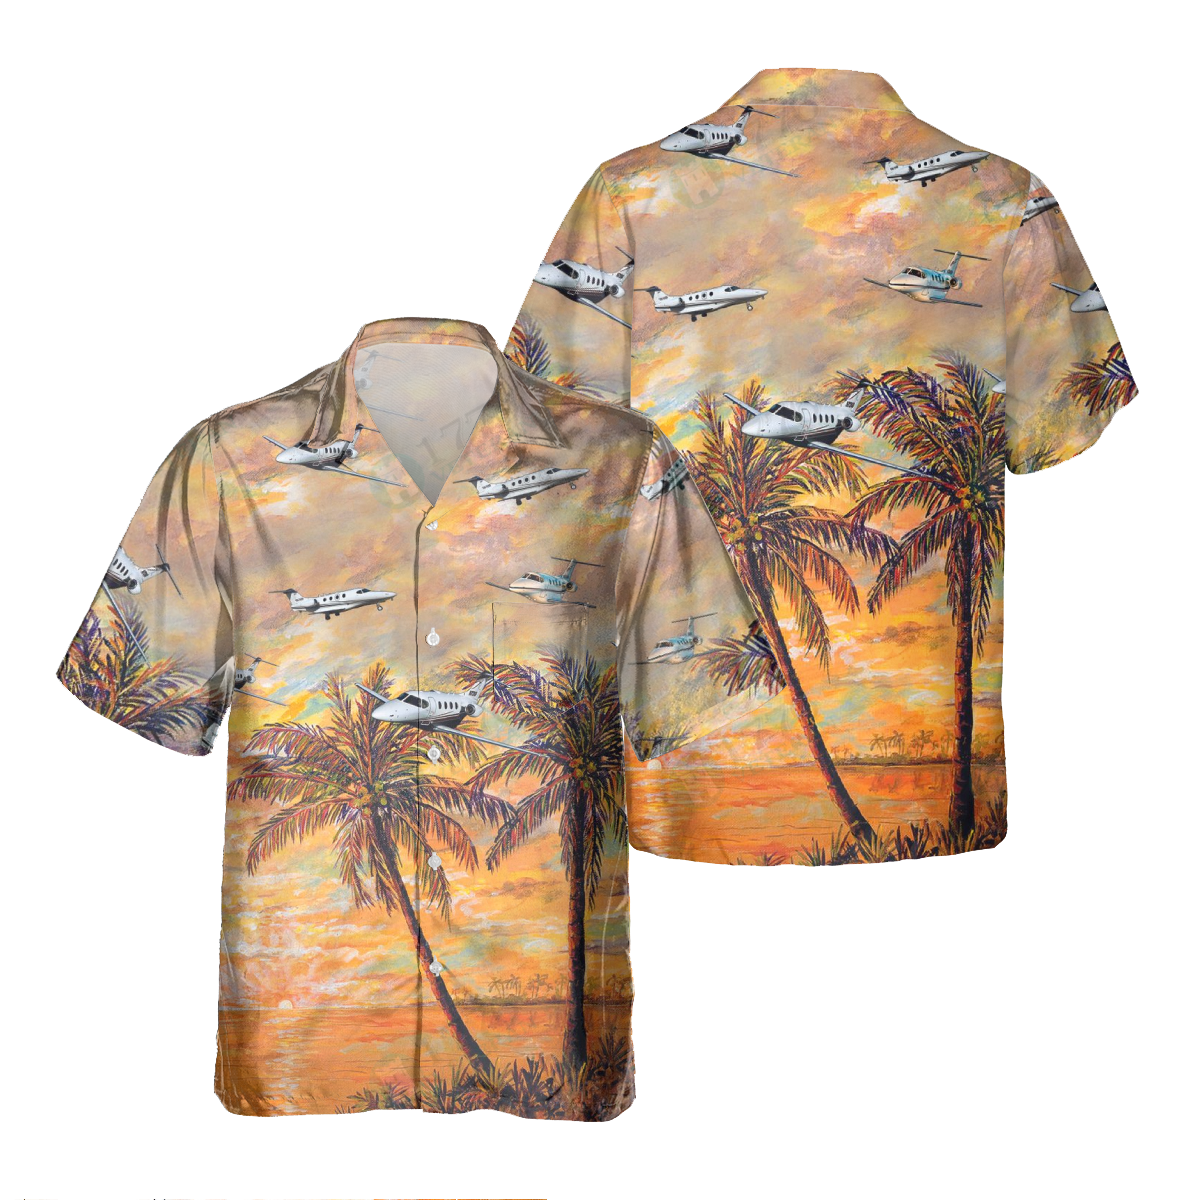 BEECHCRAFT PREMIER Pocket Hawaiian Shirt/ Hawaiian Shirt for Men Dad Veteran/ Patriot Day